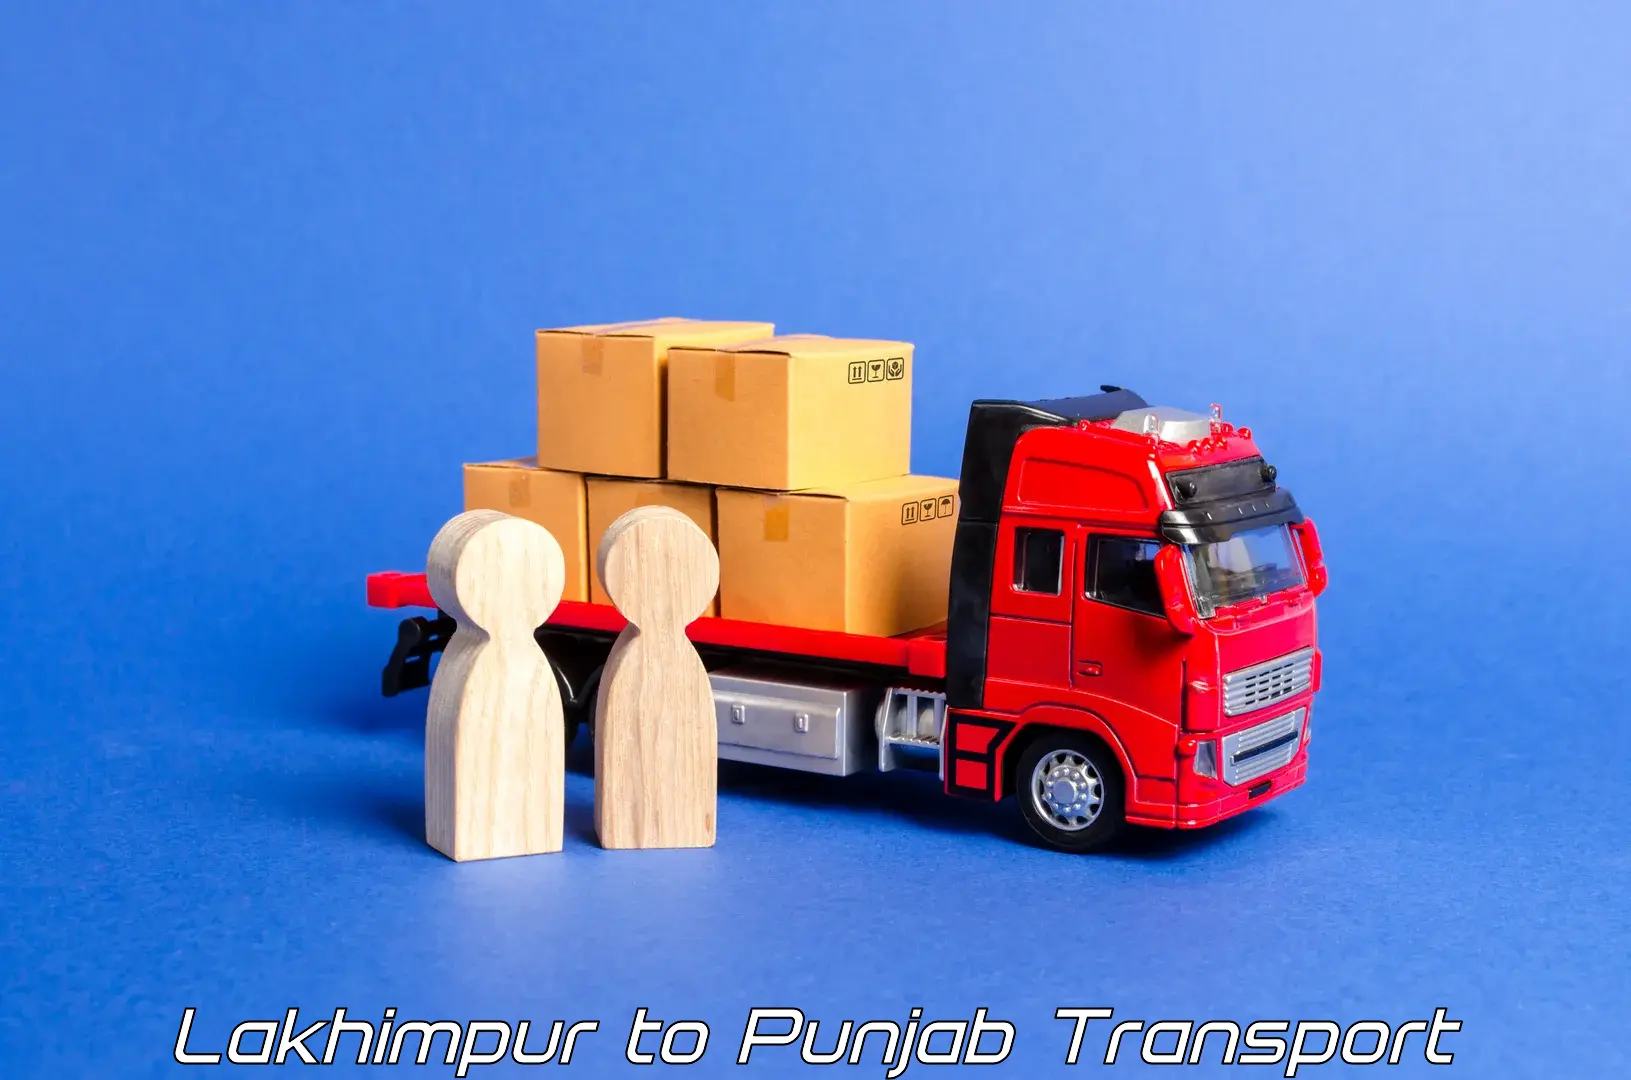 Lorry transport service Lakhimpur to Punjab